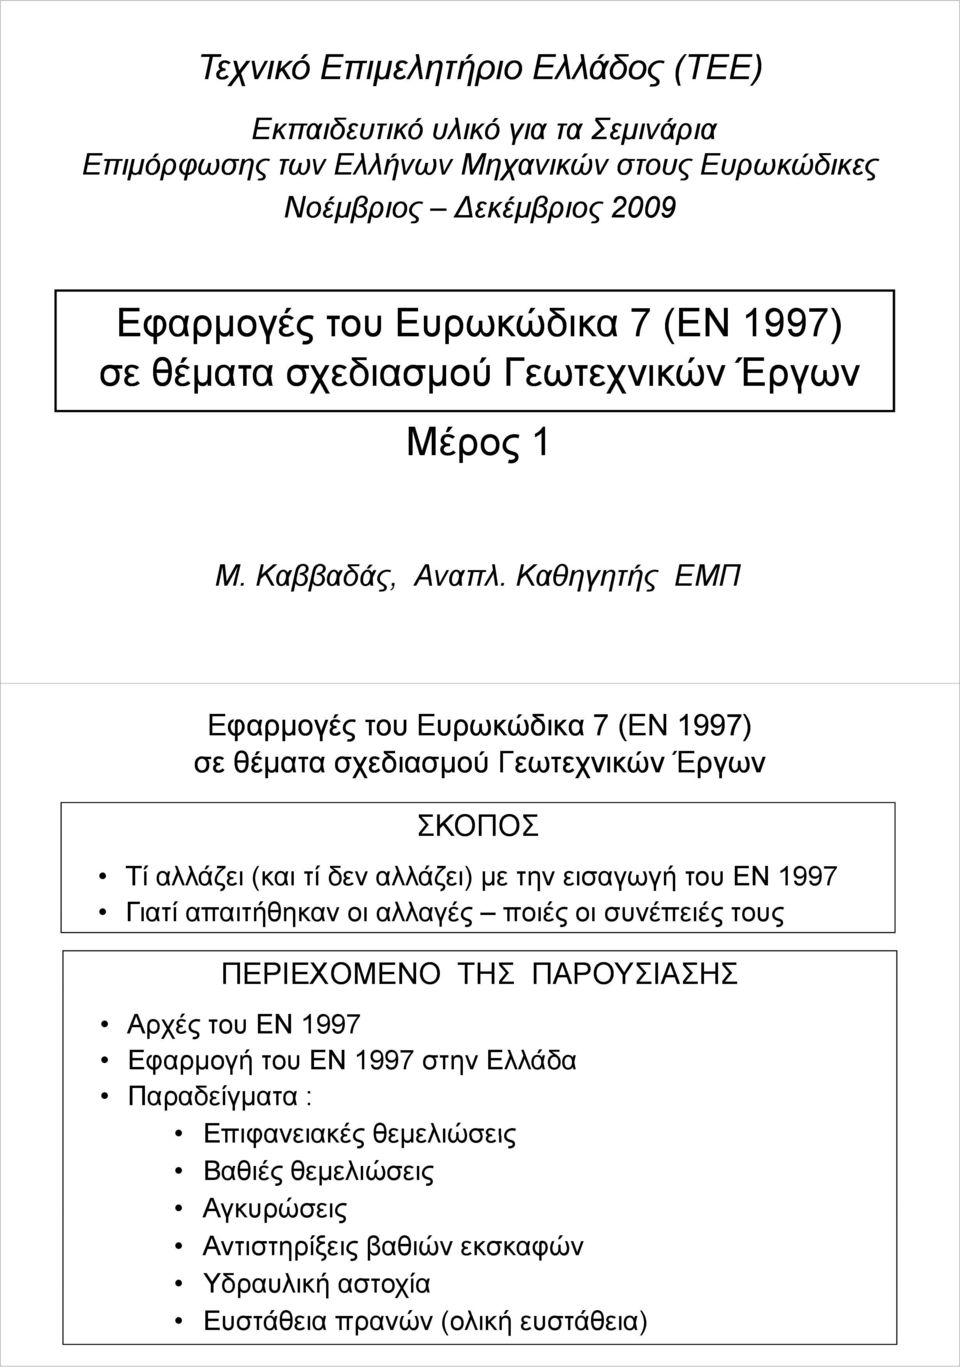 Καθηητής ΕΜΠ Εφαρμοές του Ευρωκώδικα 7 (N 1997) σε θέματα σχεδιασμού Γεωτεχνικών Έρων ΣΚΟΠΟΣ Τί αλλάζει (και τί δεν αλλάζει) με την εισαωή του ΕΝ 1997 Γιατί απαιτήθηκαν